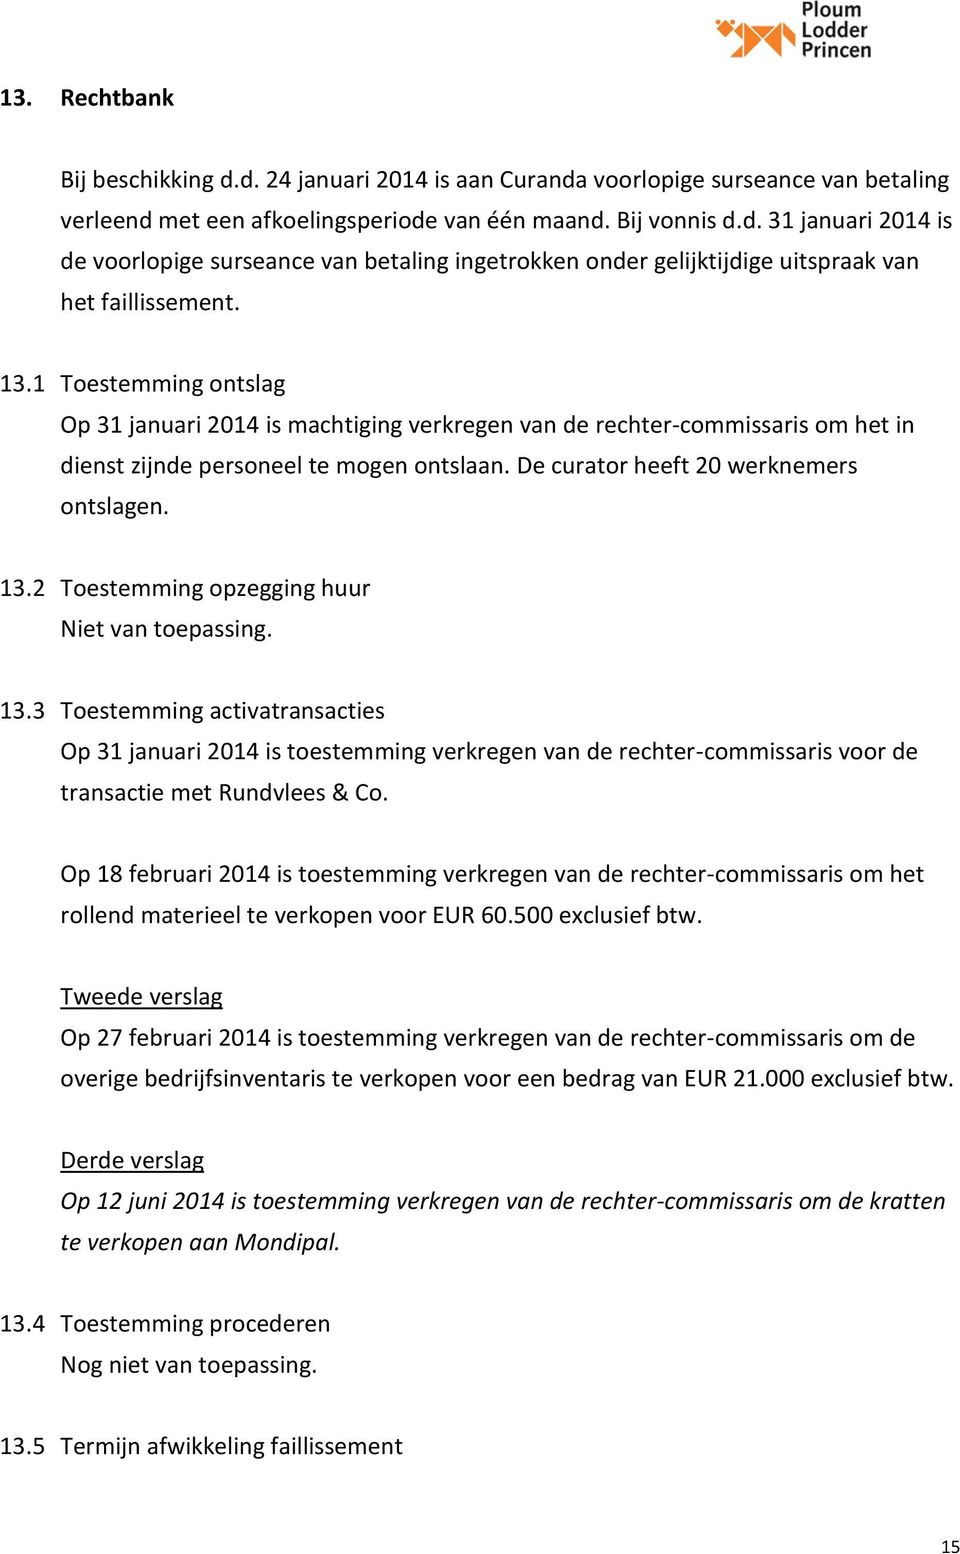 2 Toestemming opzegging huur Niet van toepassing. 13.3 Toestemming activatransacties Op 31 januari 2014 is toestemming verkregen van de rechter-commissaris voor de transactie met Rundvlees & Co.